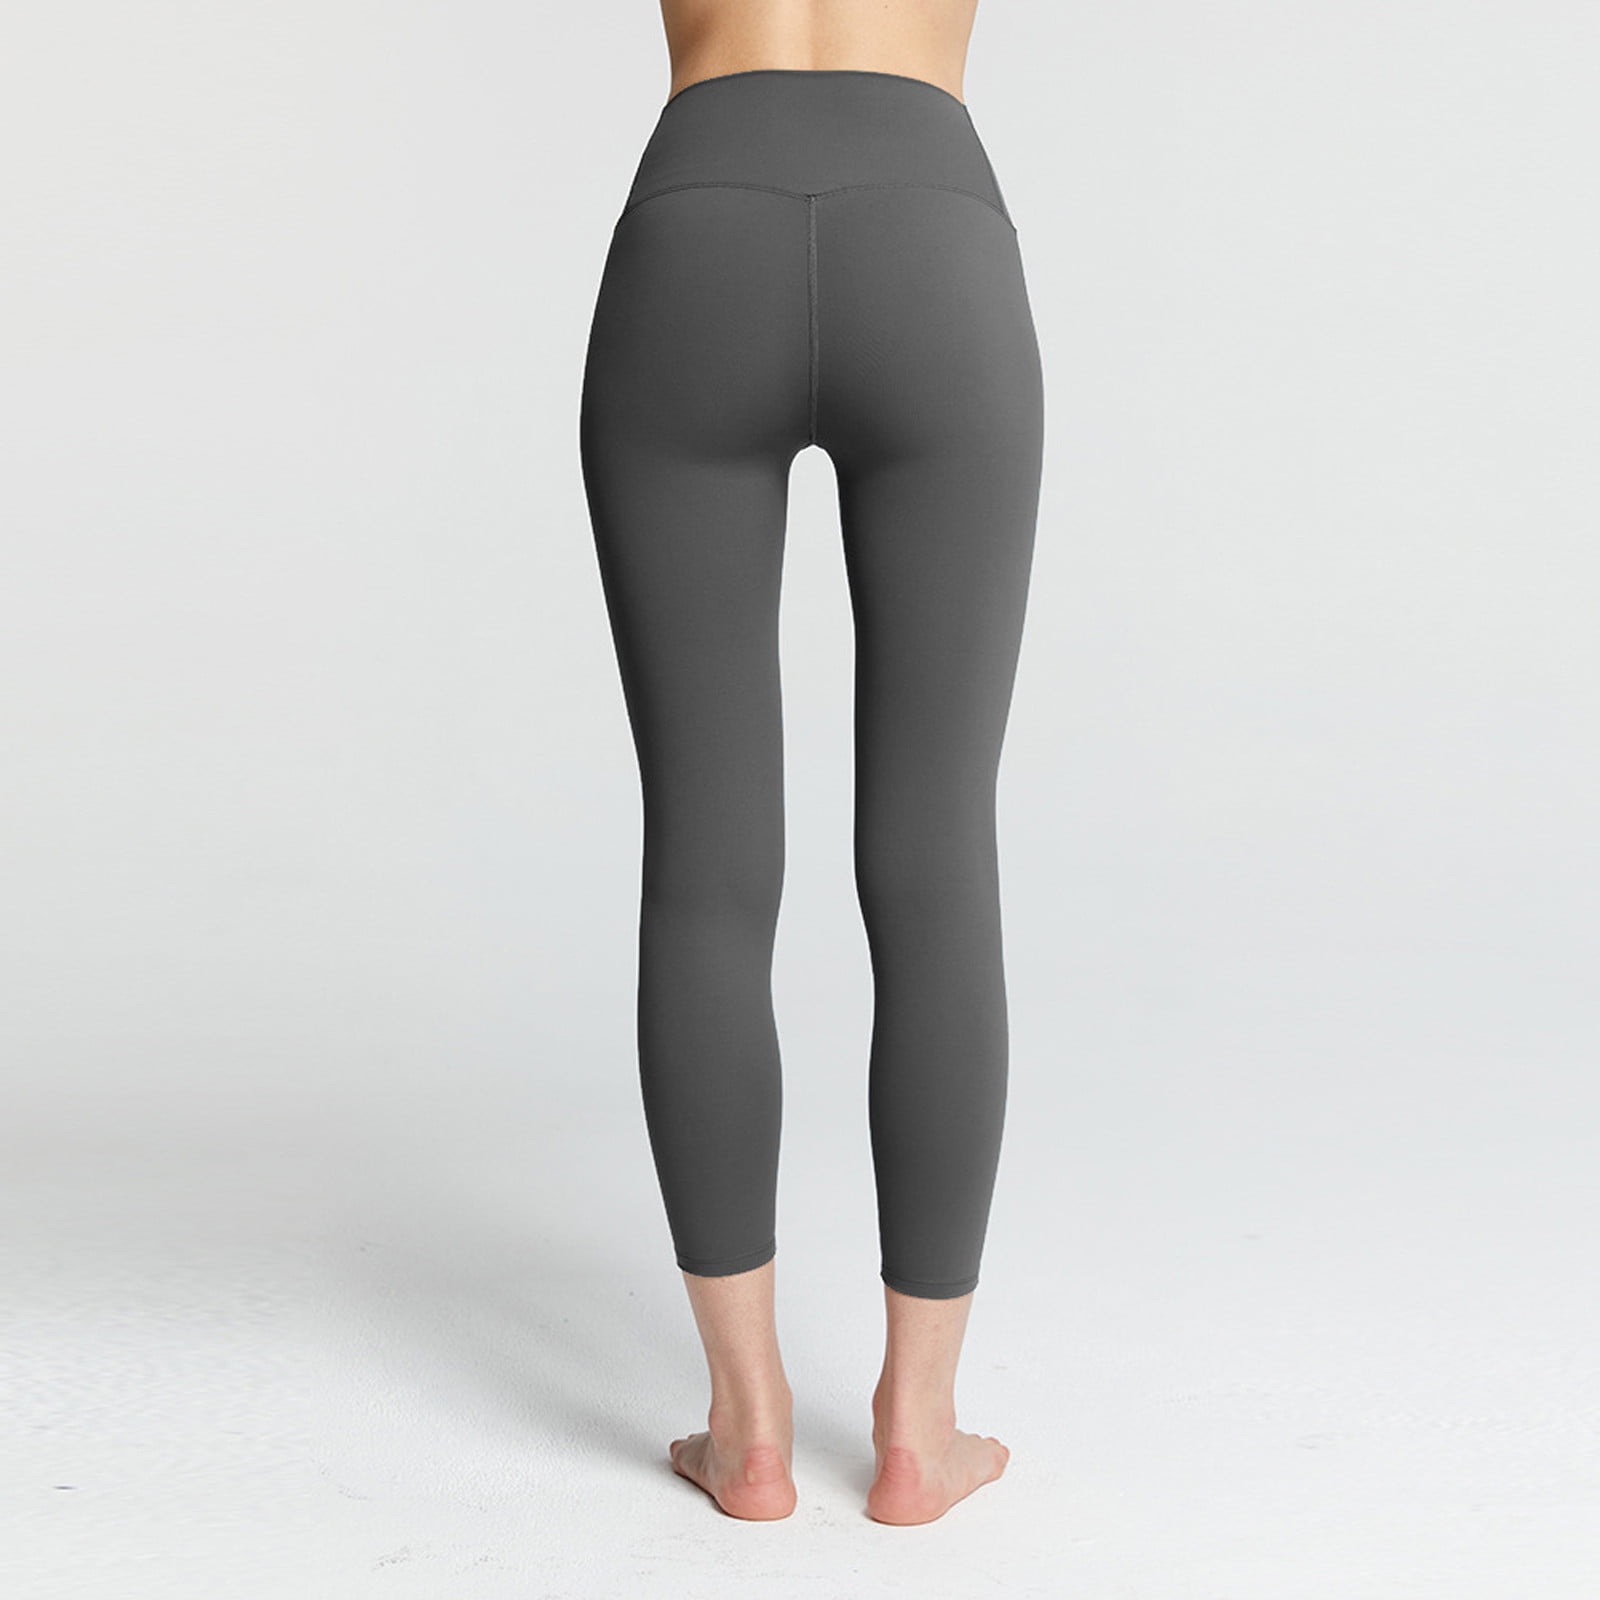 Booker Yoga Pants For Women Custom Soild Custom High Waisted Leggings  Running Pilates Workout Soft Yoga Pants 